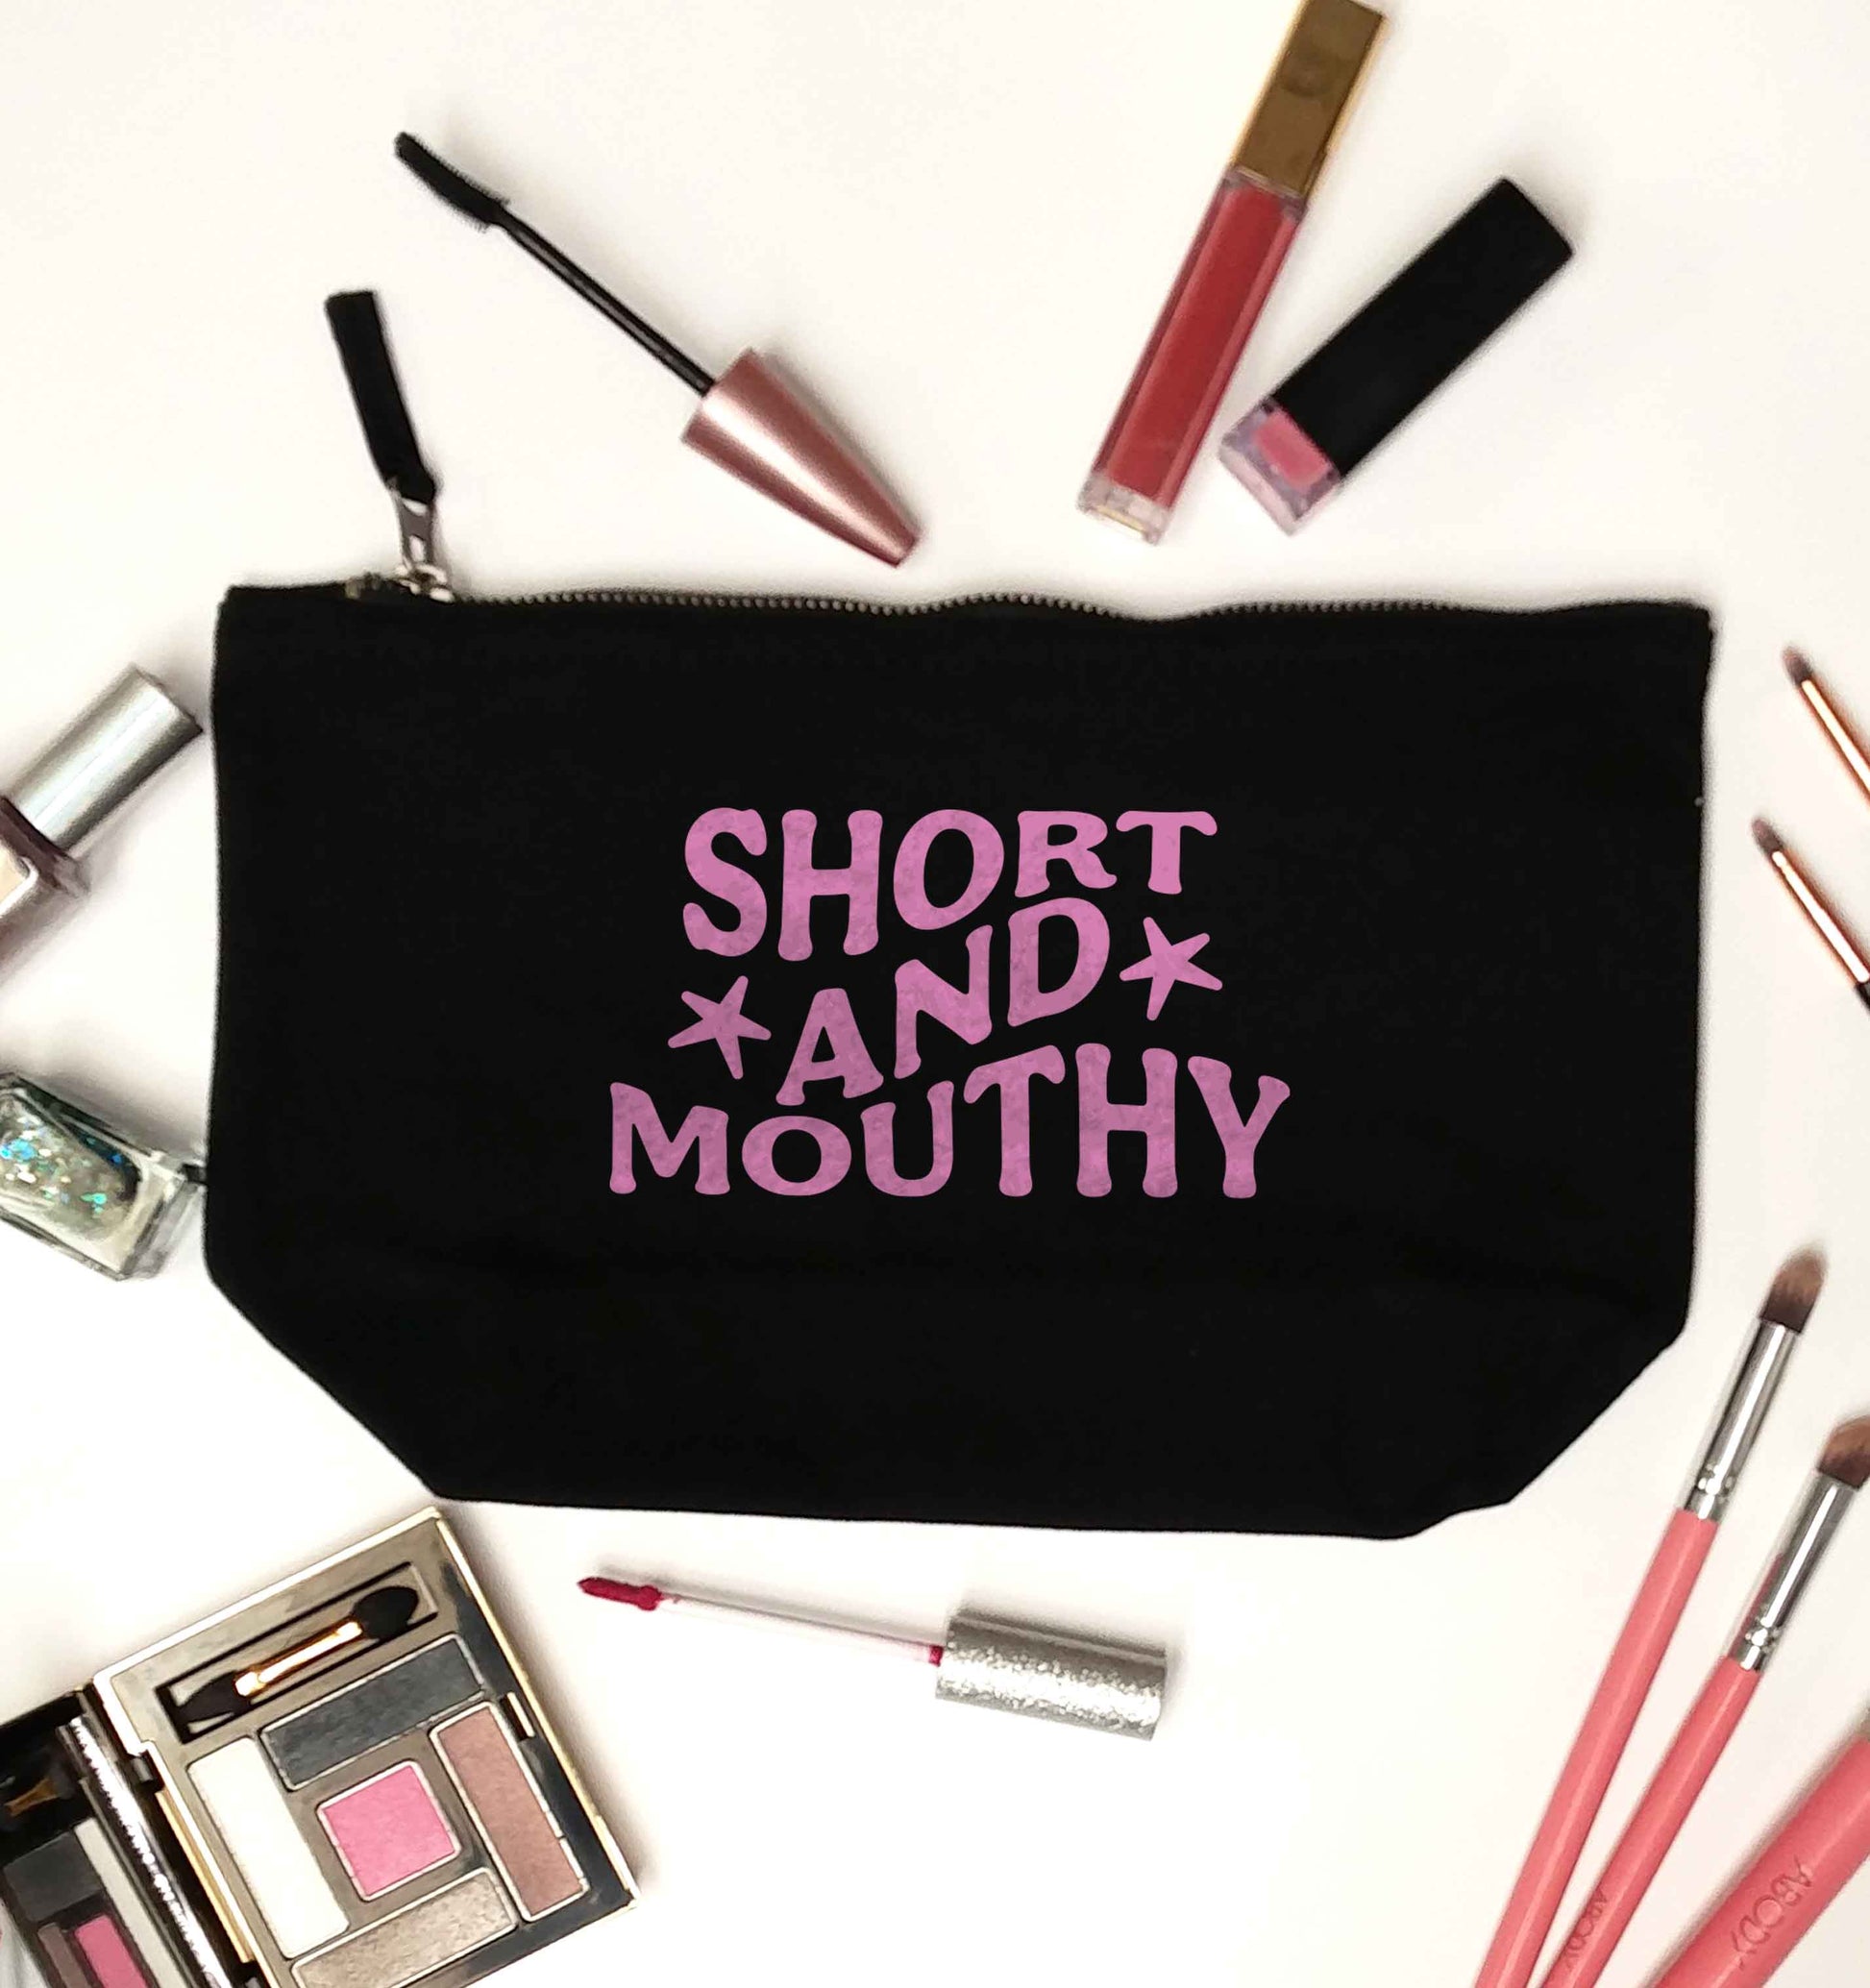 Short and mouthy black makeup bag